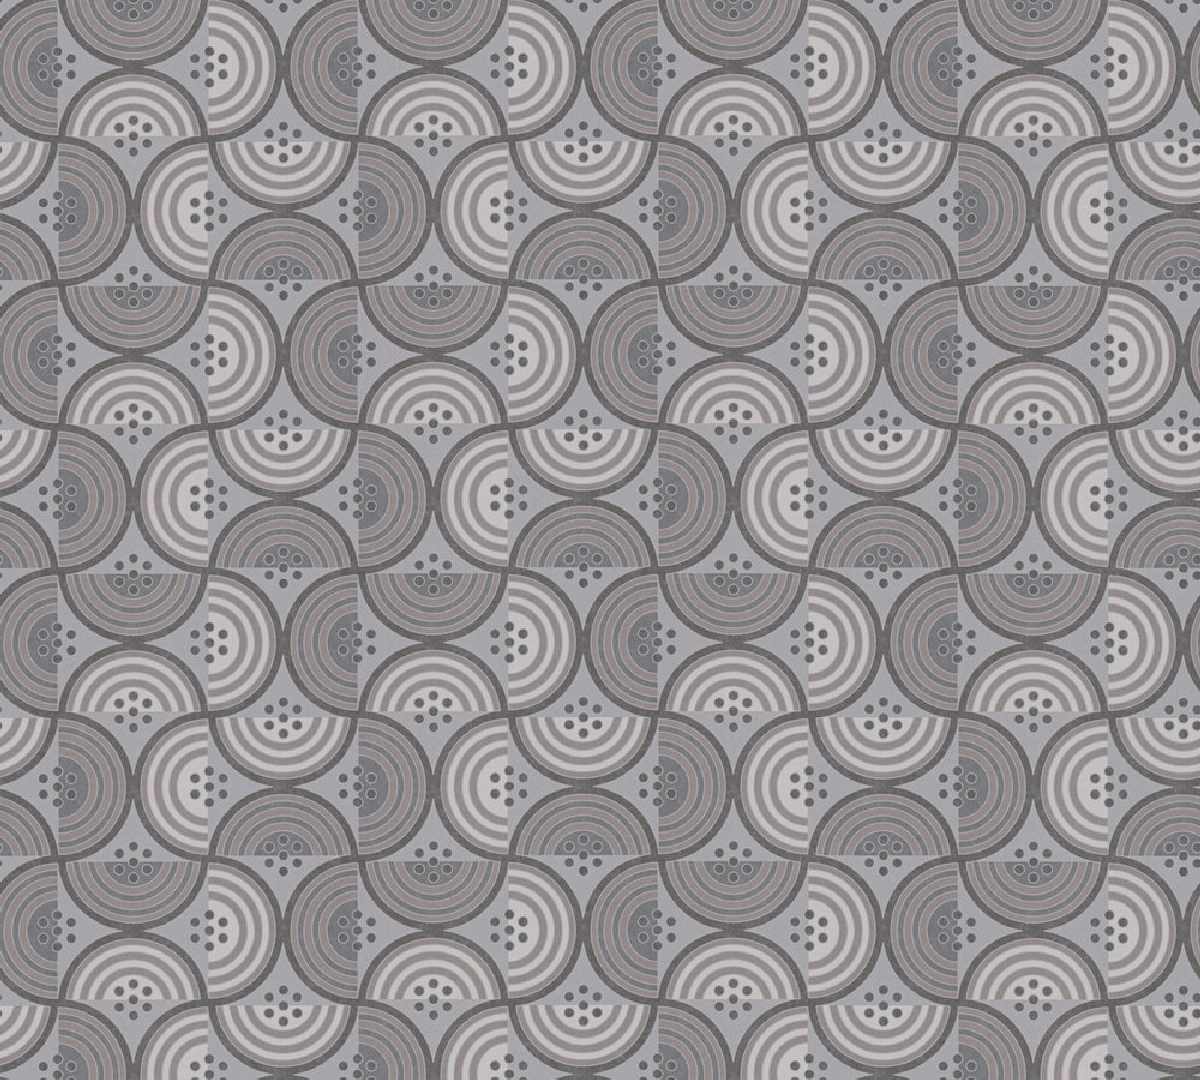 Vliestapete Art of Eden 390614 - Grafiktapete Muster - Taupe, Grau